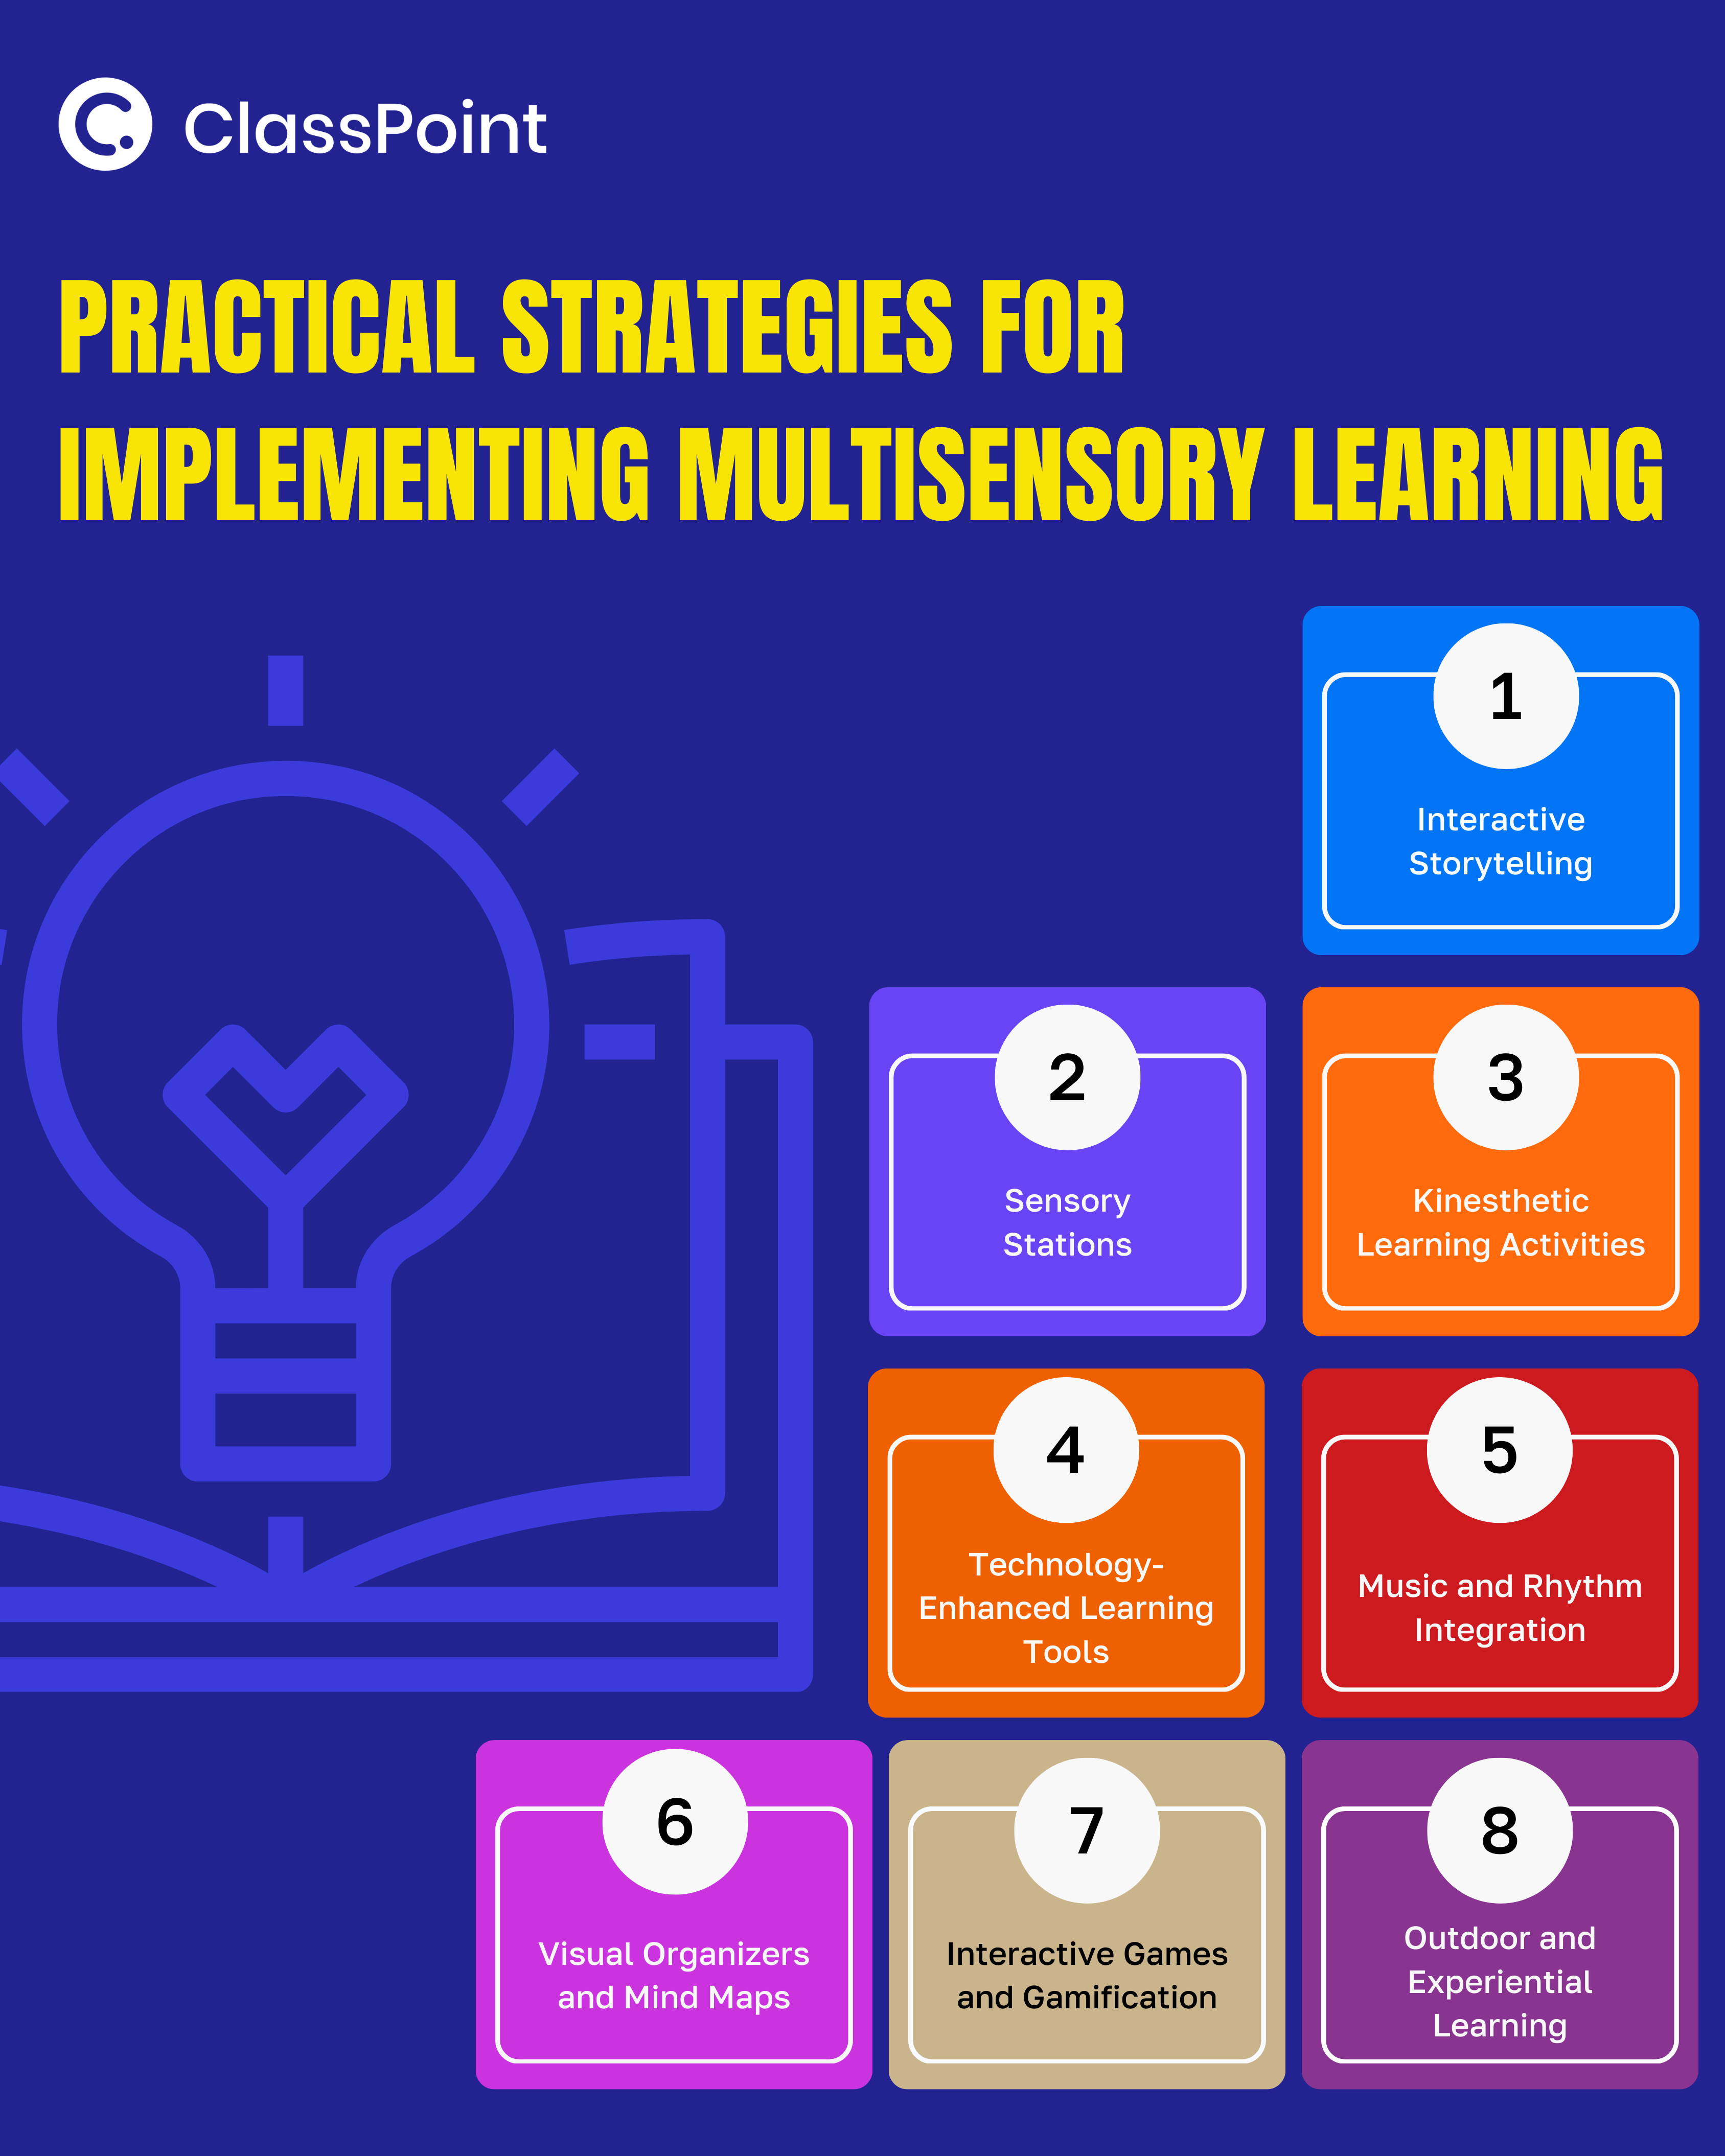 strategi praktis untuk menerapkan pembelajaran multisensori